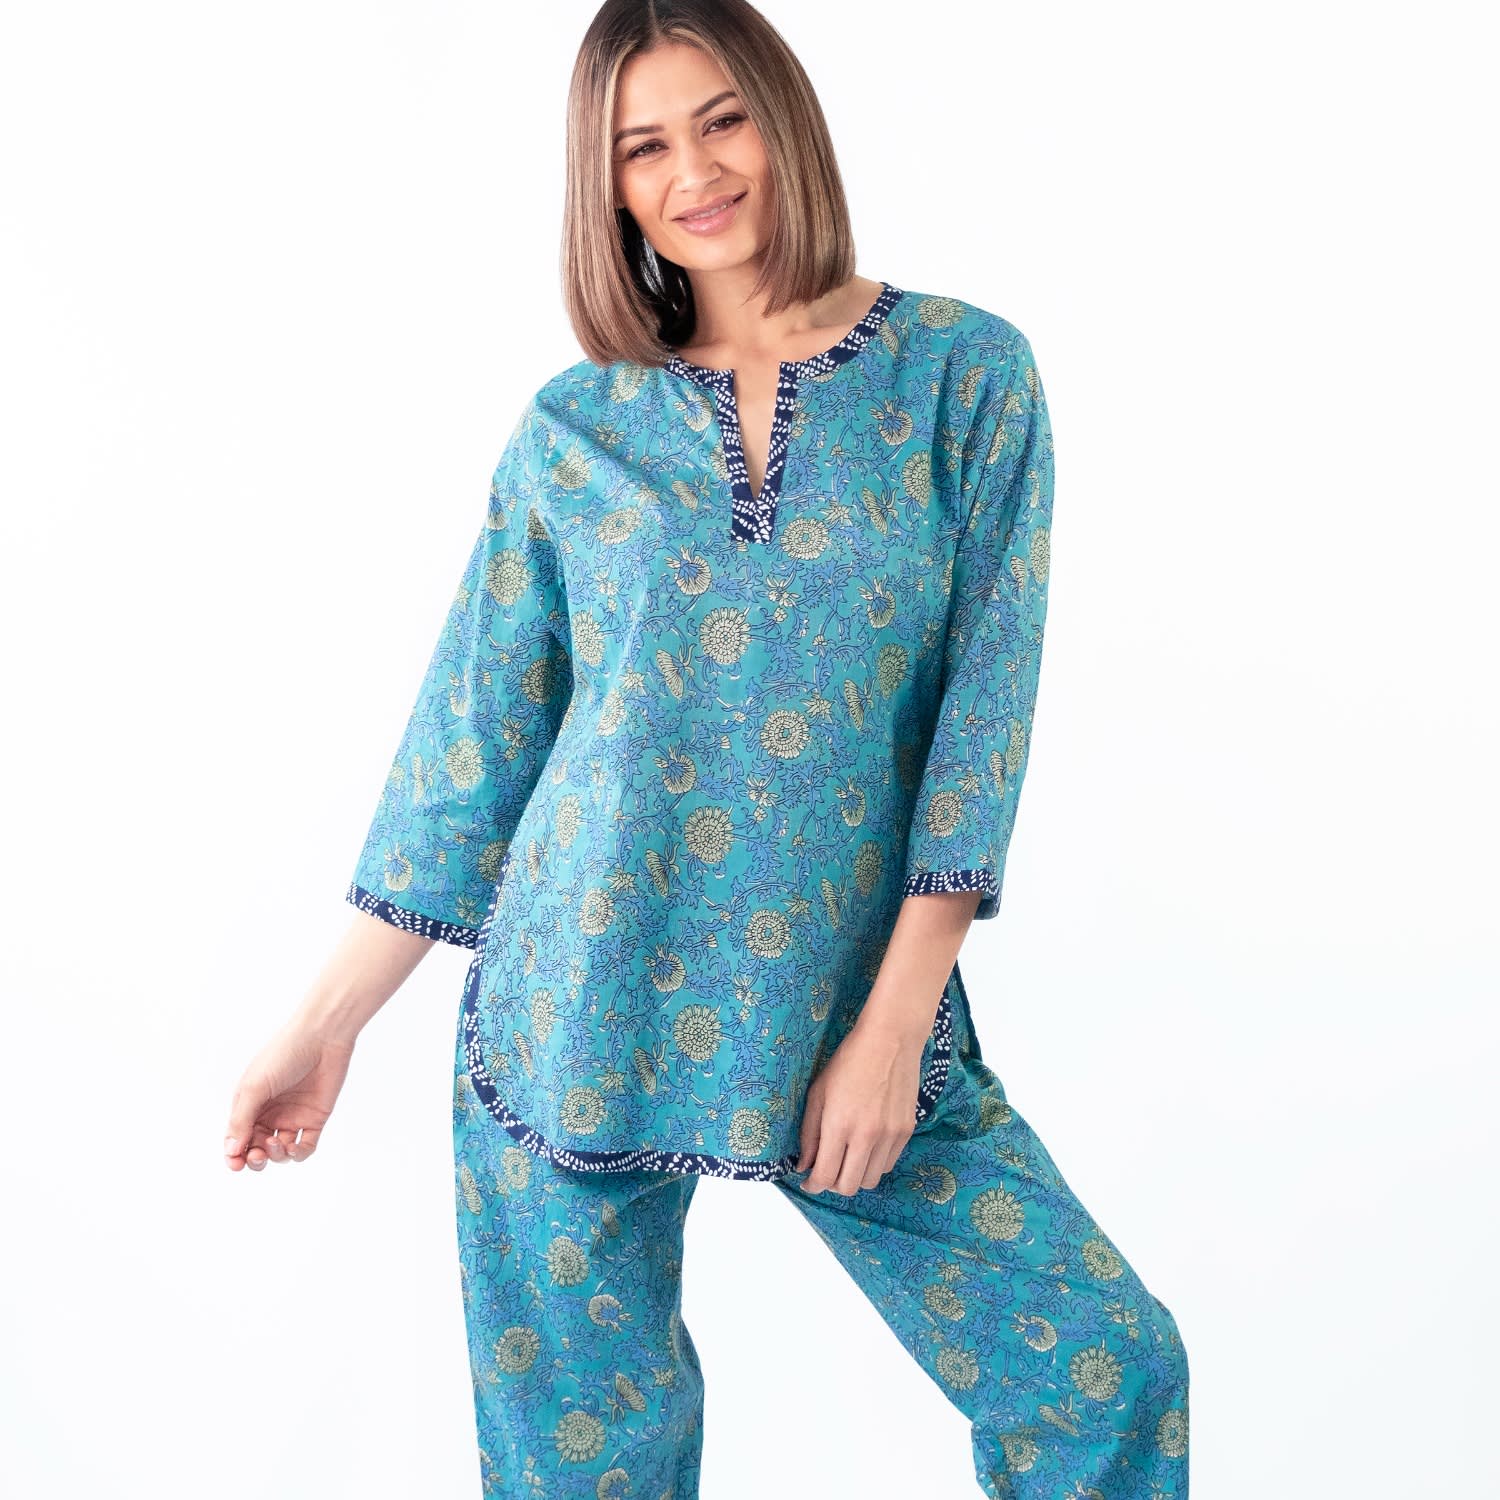 Buy Owl Print Top & Pyjama in Black - 100% Cotton Online India